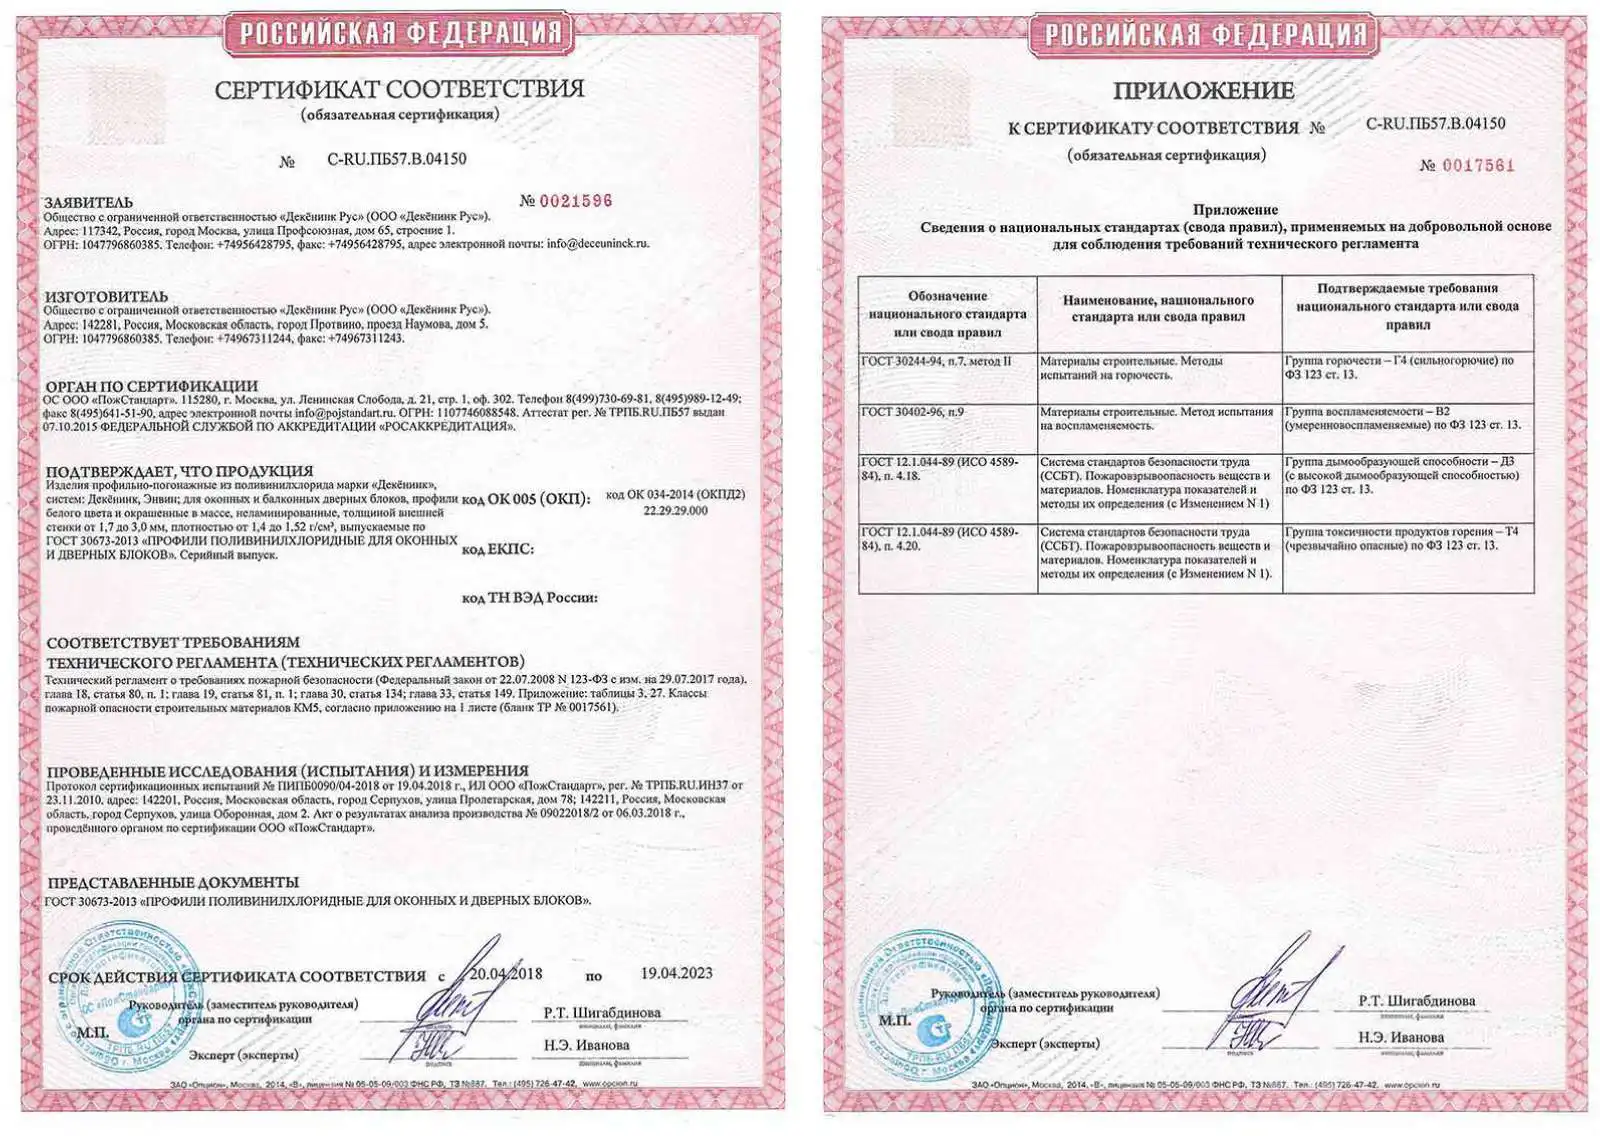 Сертификат соответствия пожарной безопасности 123−ФЗ от 29.07.17